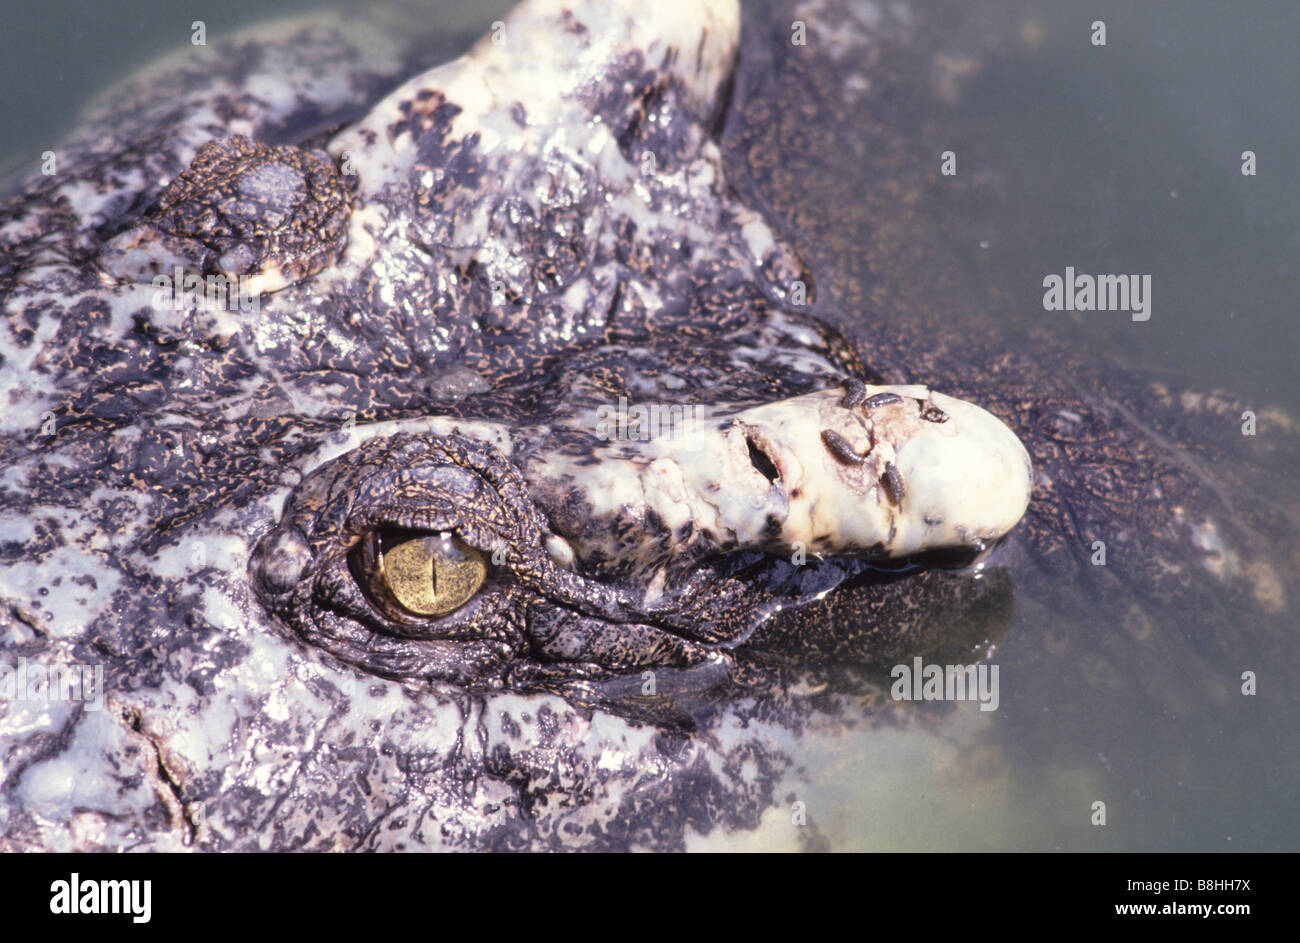 Coccodrillo di acqua salata (Crocodylus porosus) con parassiti (leech) Foto Stock